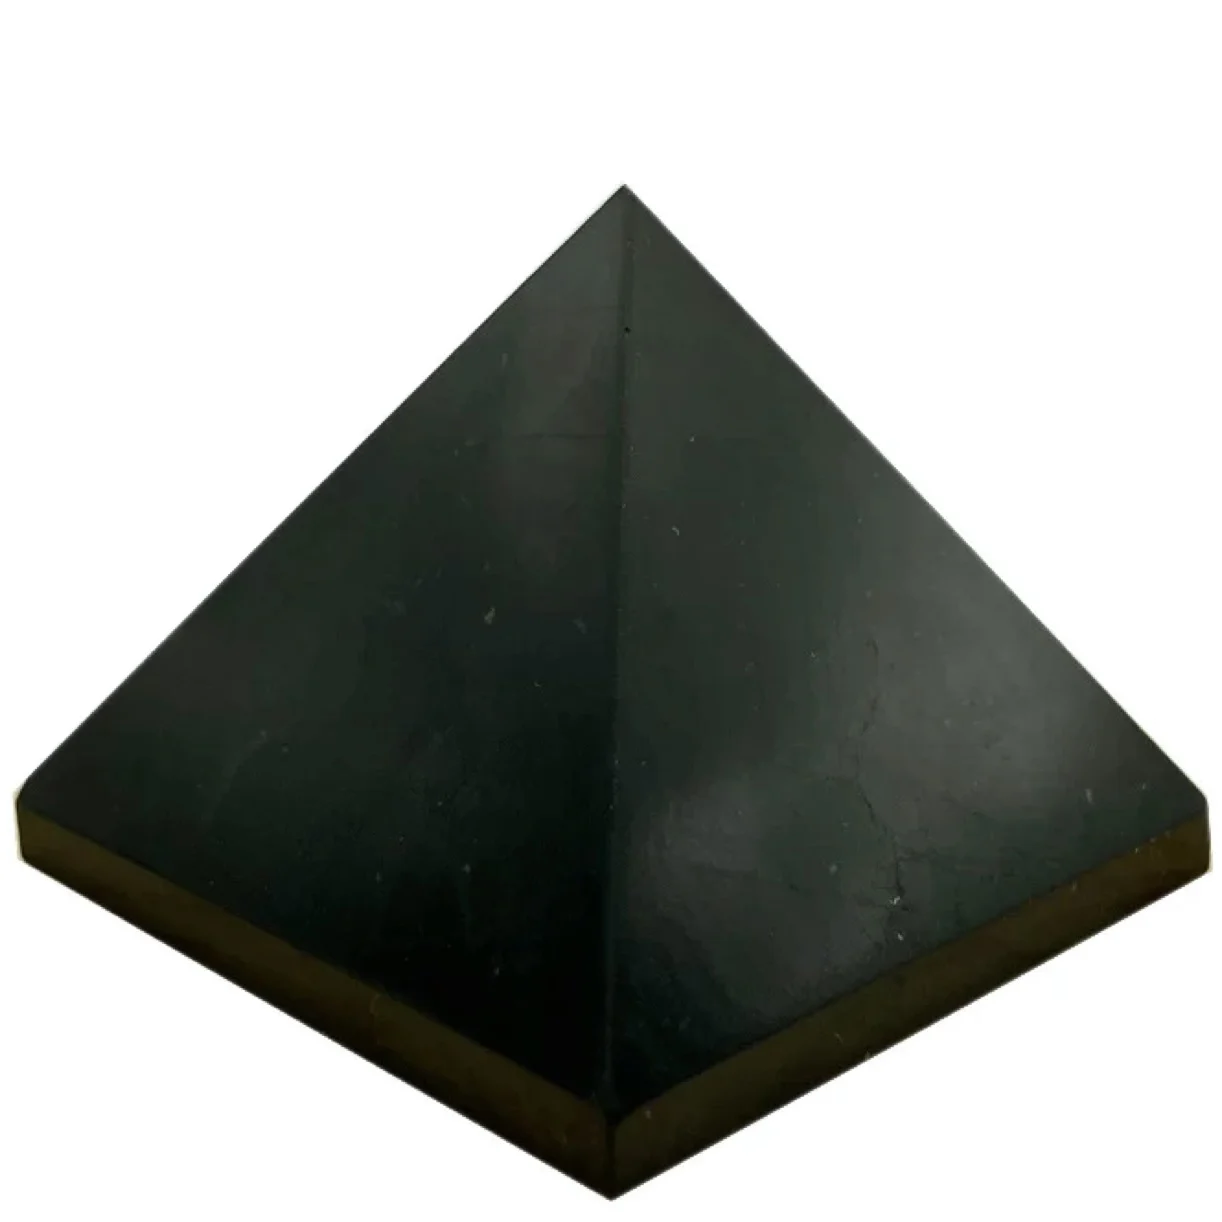 Оптовая продажа, натуральные грубые лечебные камни shungite пирамиды shungite различных размеров